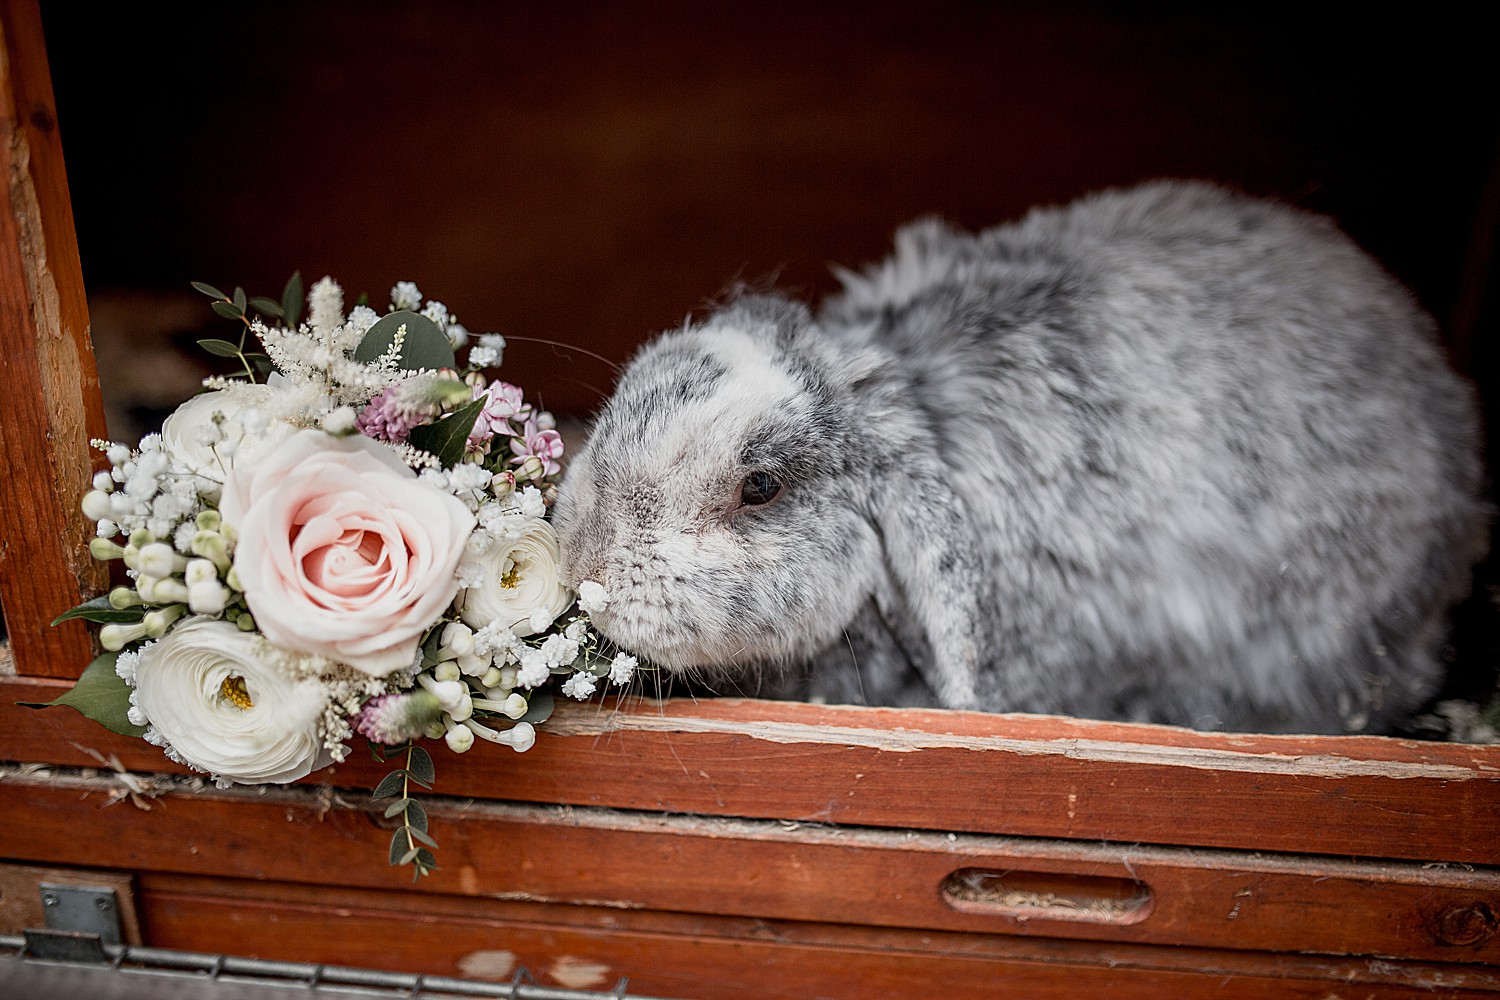 Rabbit nibbles a bridesmaids bouquet